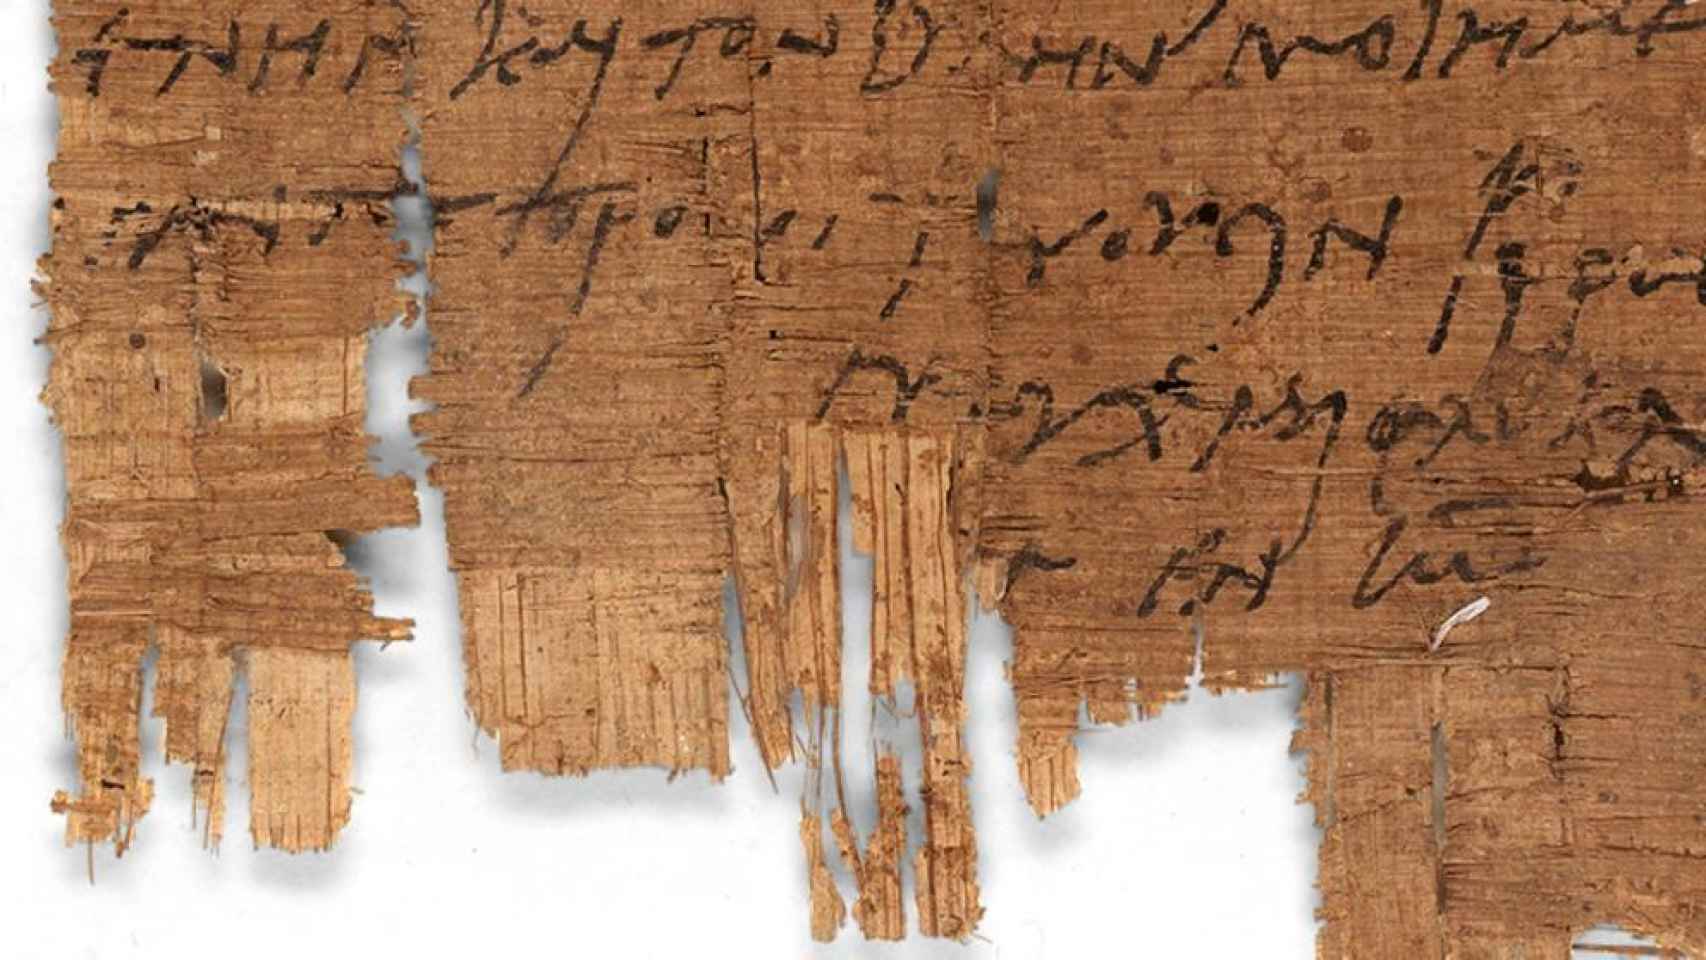 El manuscrito cristiano más antiguo, hallado en Egipto, dice que no eran un pueblo perseguido Cultura-Manuscritos-Religion-Cristianismo-Imperio_Romano-Egipto-Cultura_413219501_127899727_1706x960